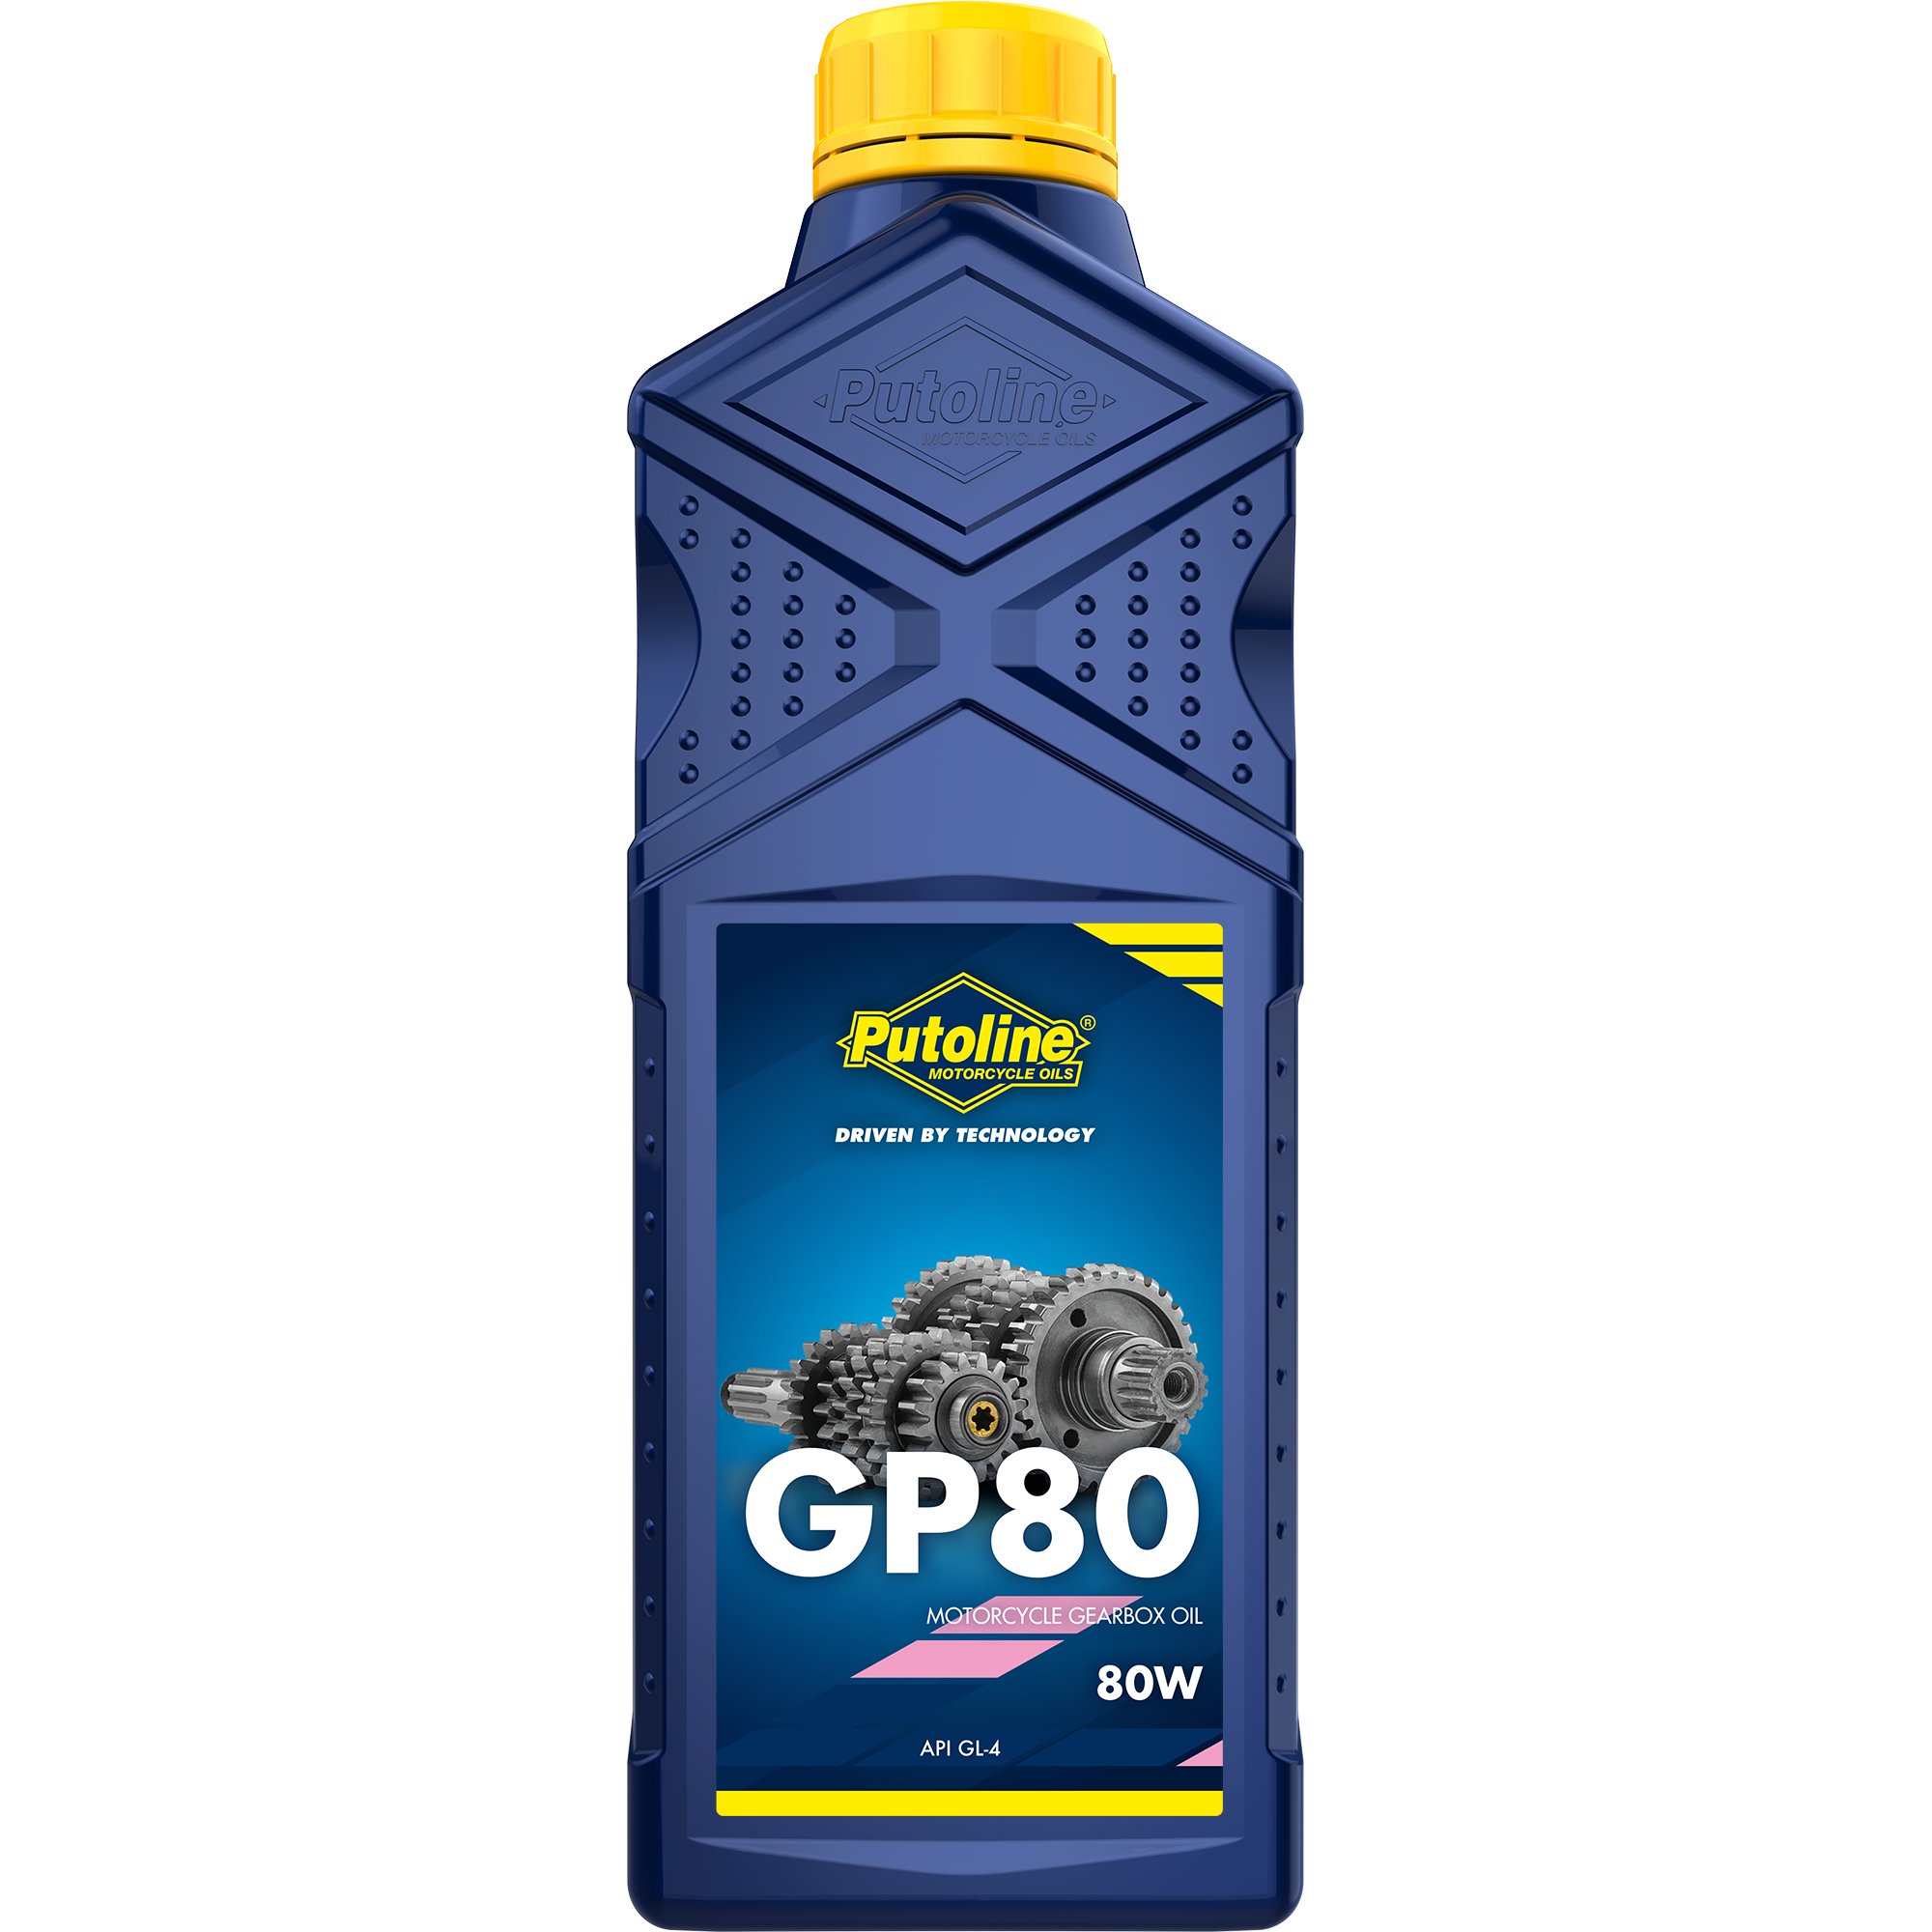 Putoline GP 80 80W, 12 x 1 lt detail 2